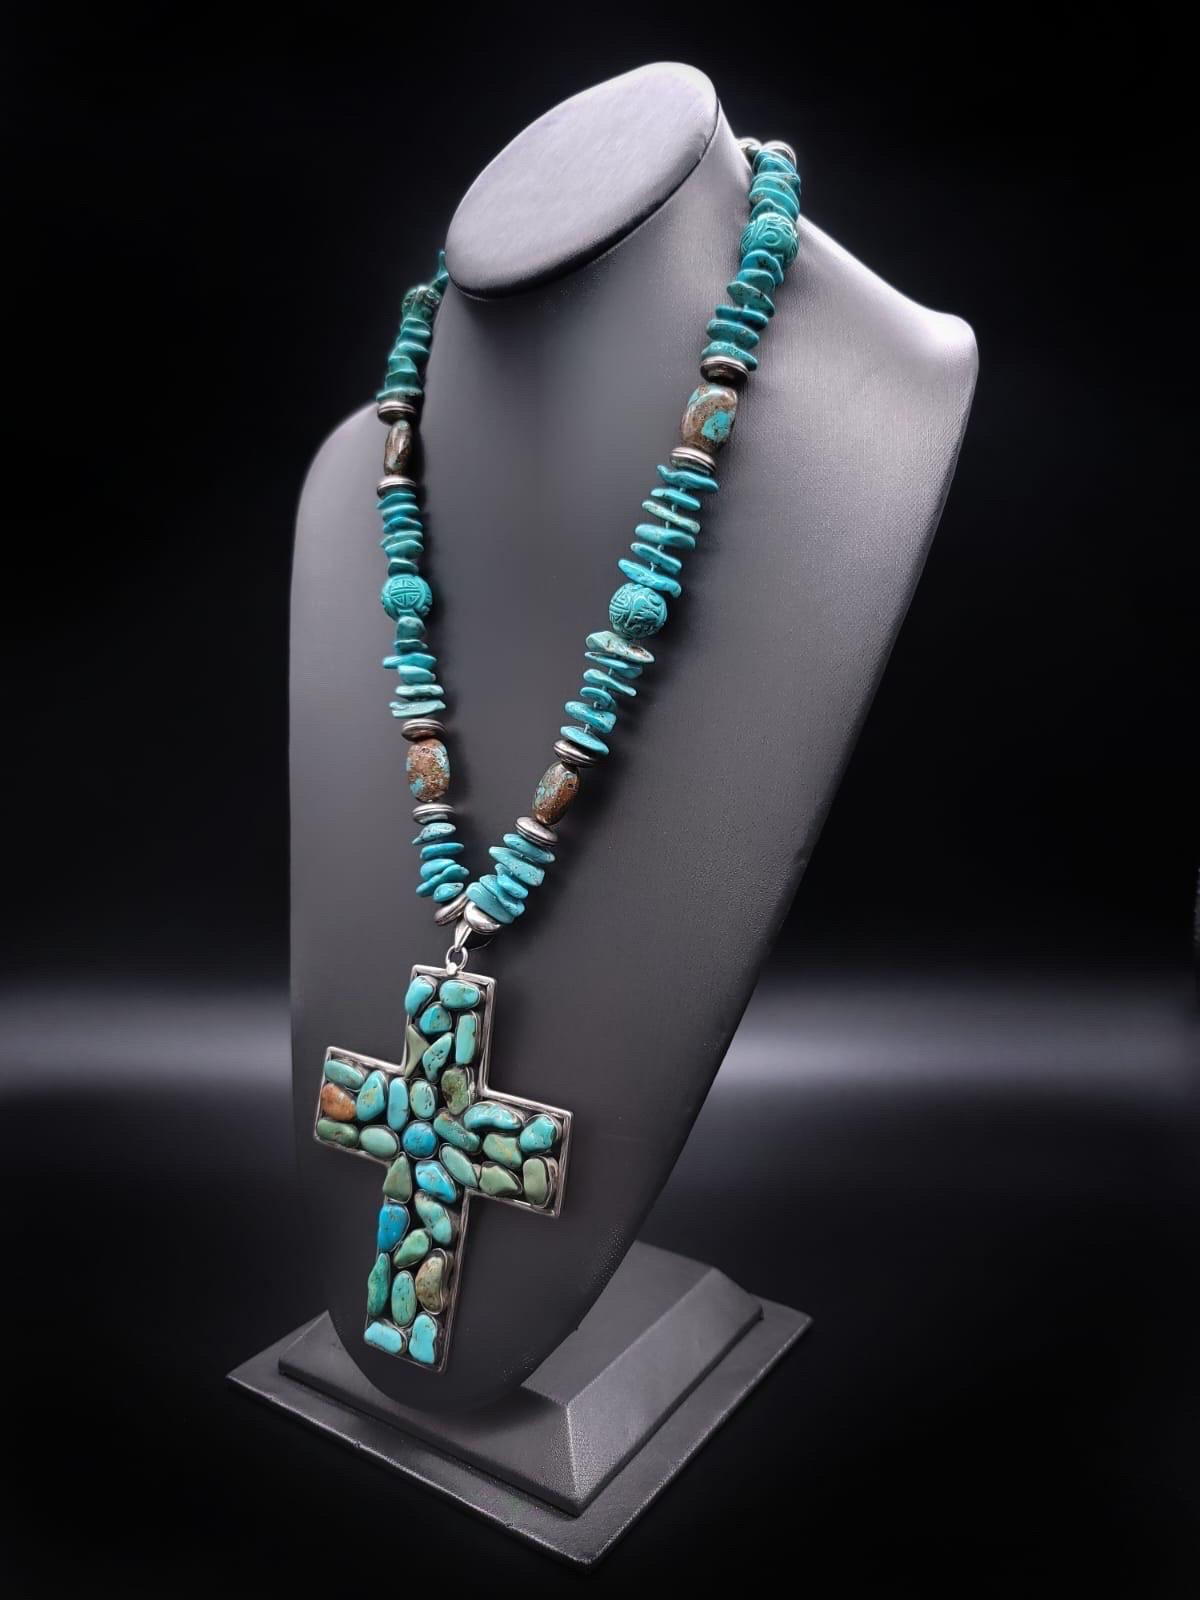 Einzigartig

Diese exquisite lange Türkis-Halskette hat einen großen 4''x3'' Silber- und Türkis-Kreuz-Anhänger, der in Mexiko hergestellt wurde. Der Anhänger besteht aus ca. 27 polierten Mischtürkisperlen, die einzeln in Silber gefasst sind. Die